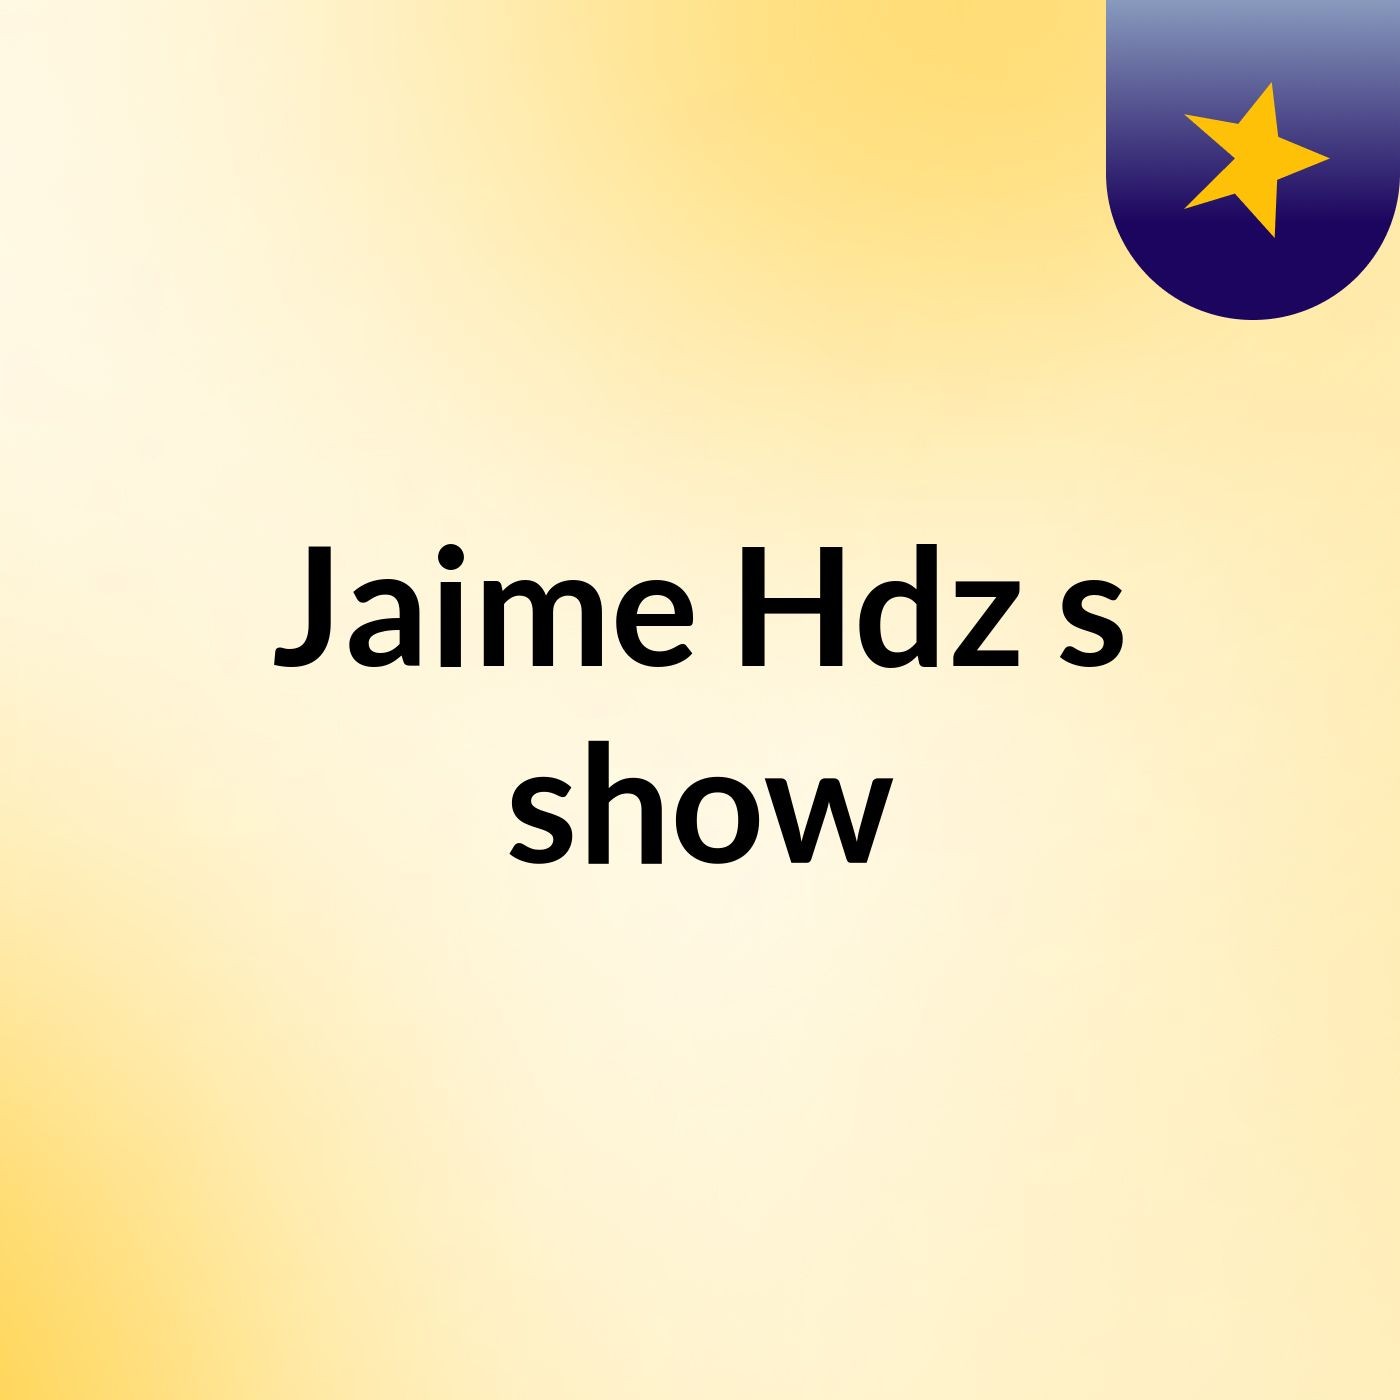 Jaime Hdz's show